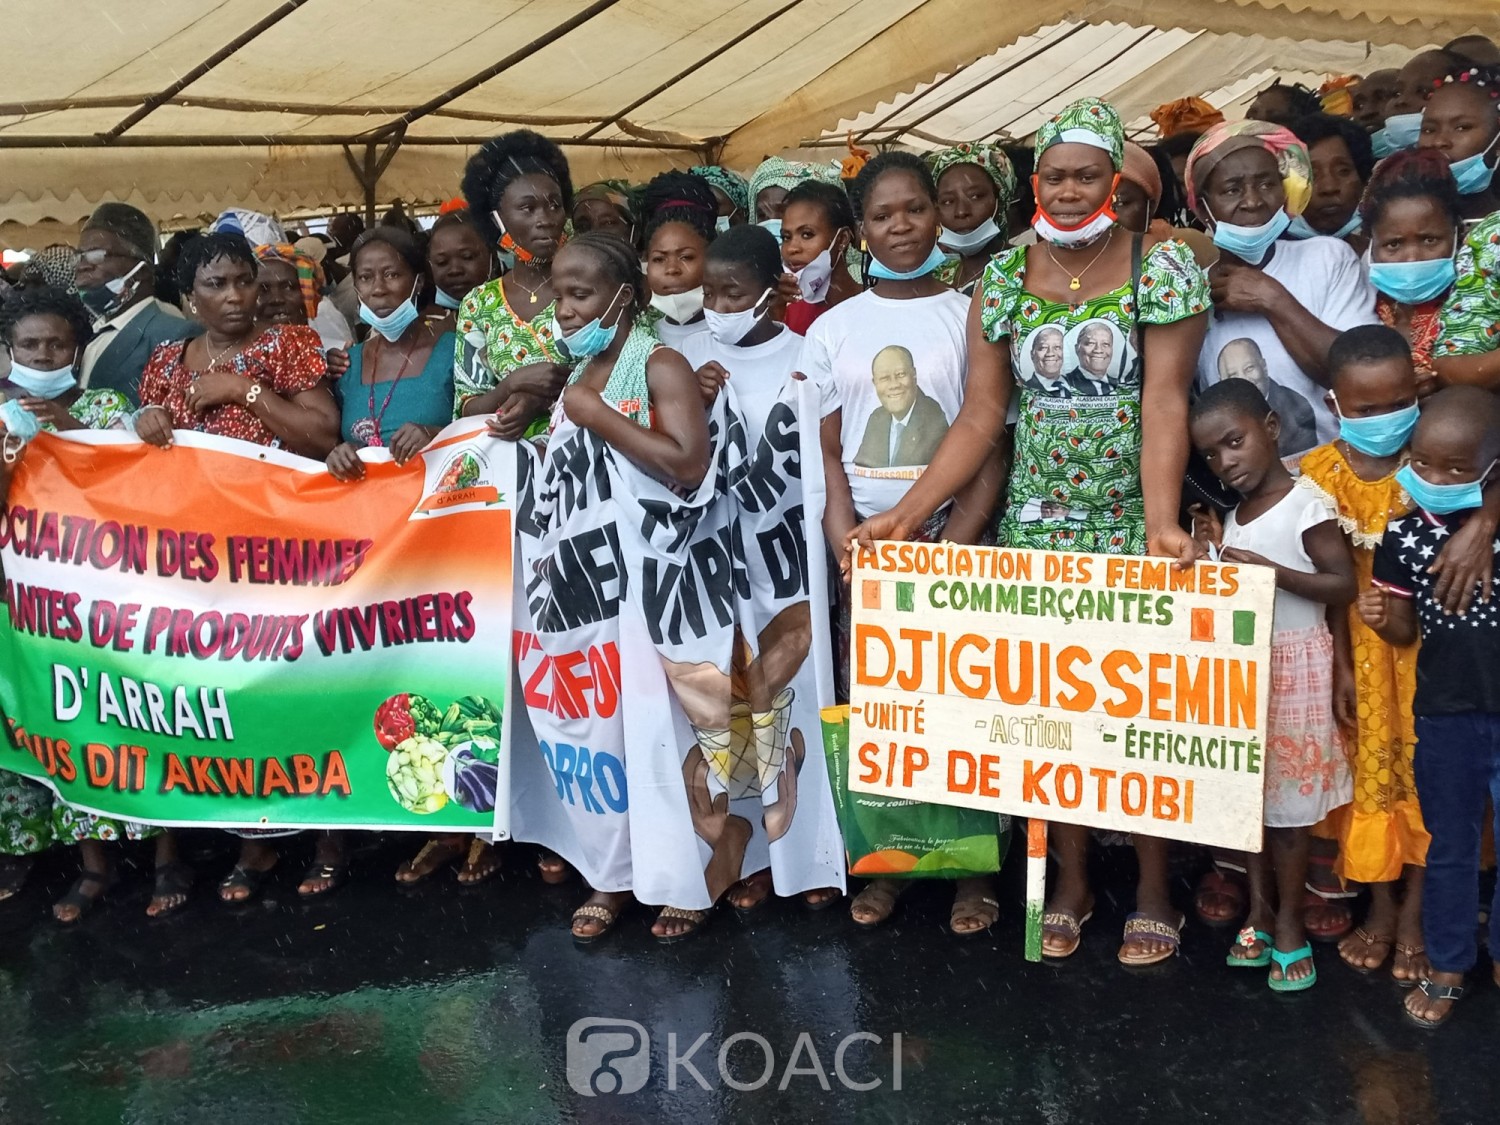 Côte d'Ivoire :    Visite d'Etat dans le Moronou, Arrah, les populations appellent à des élections apaisées